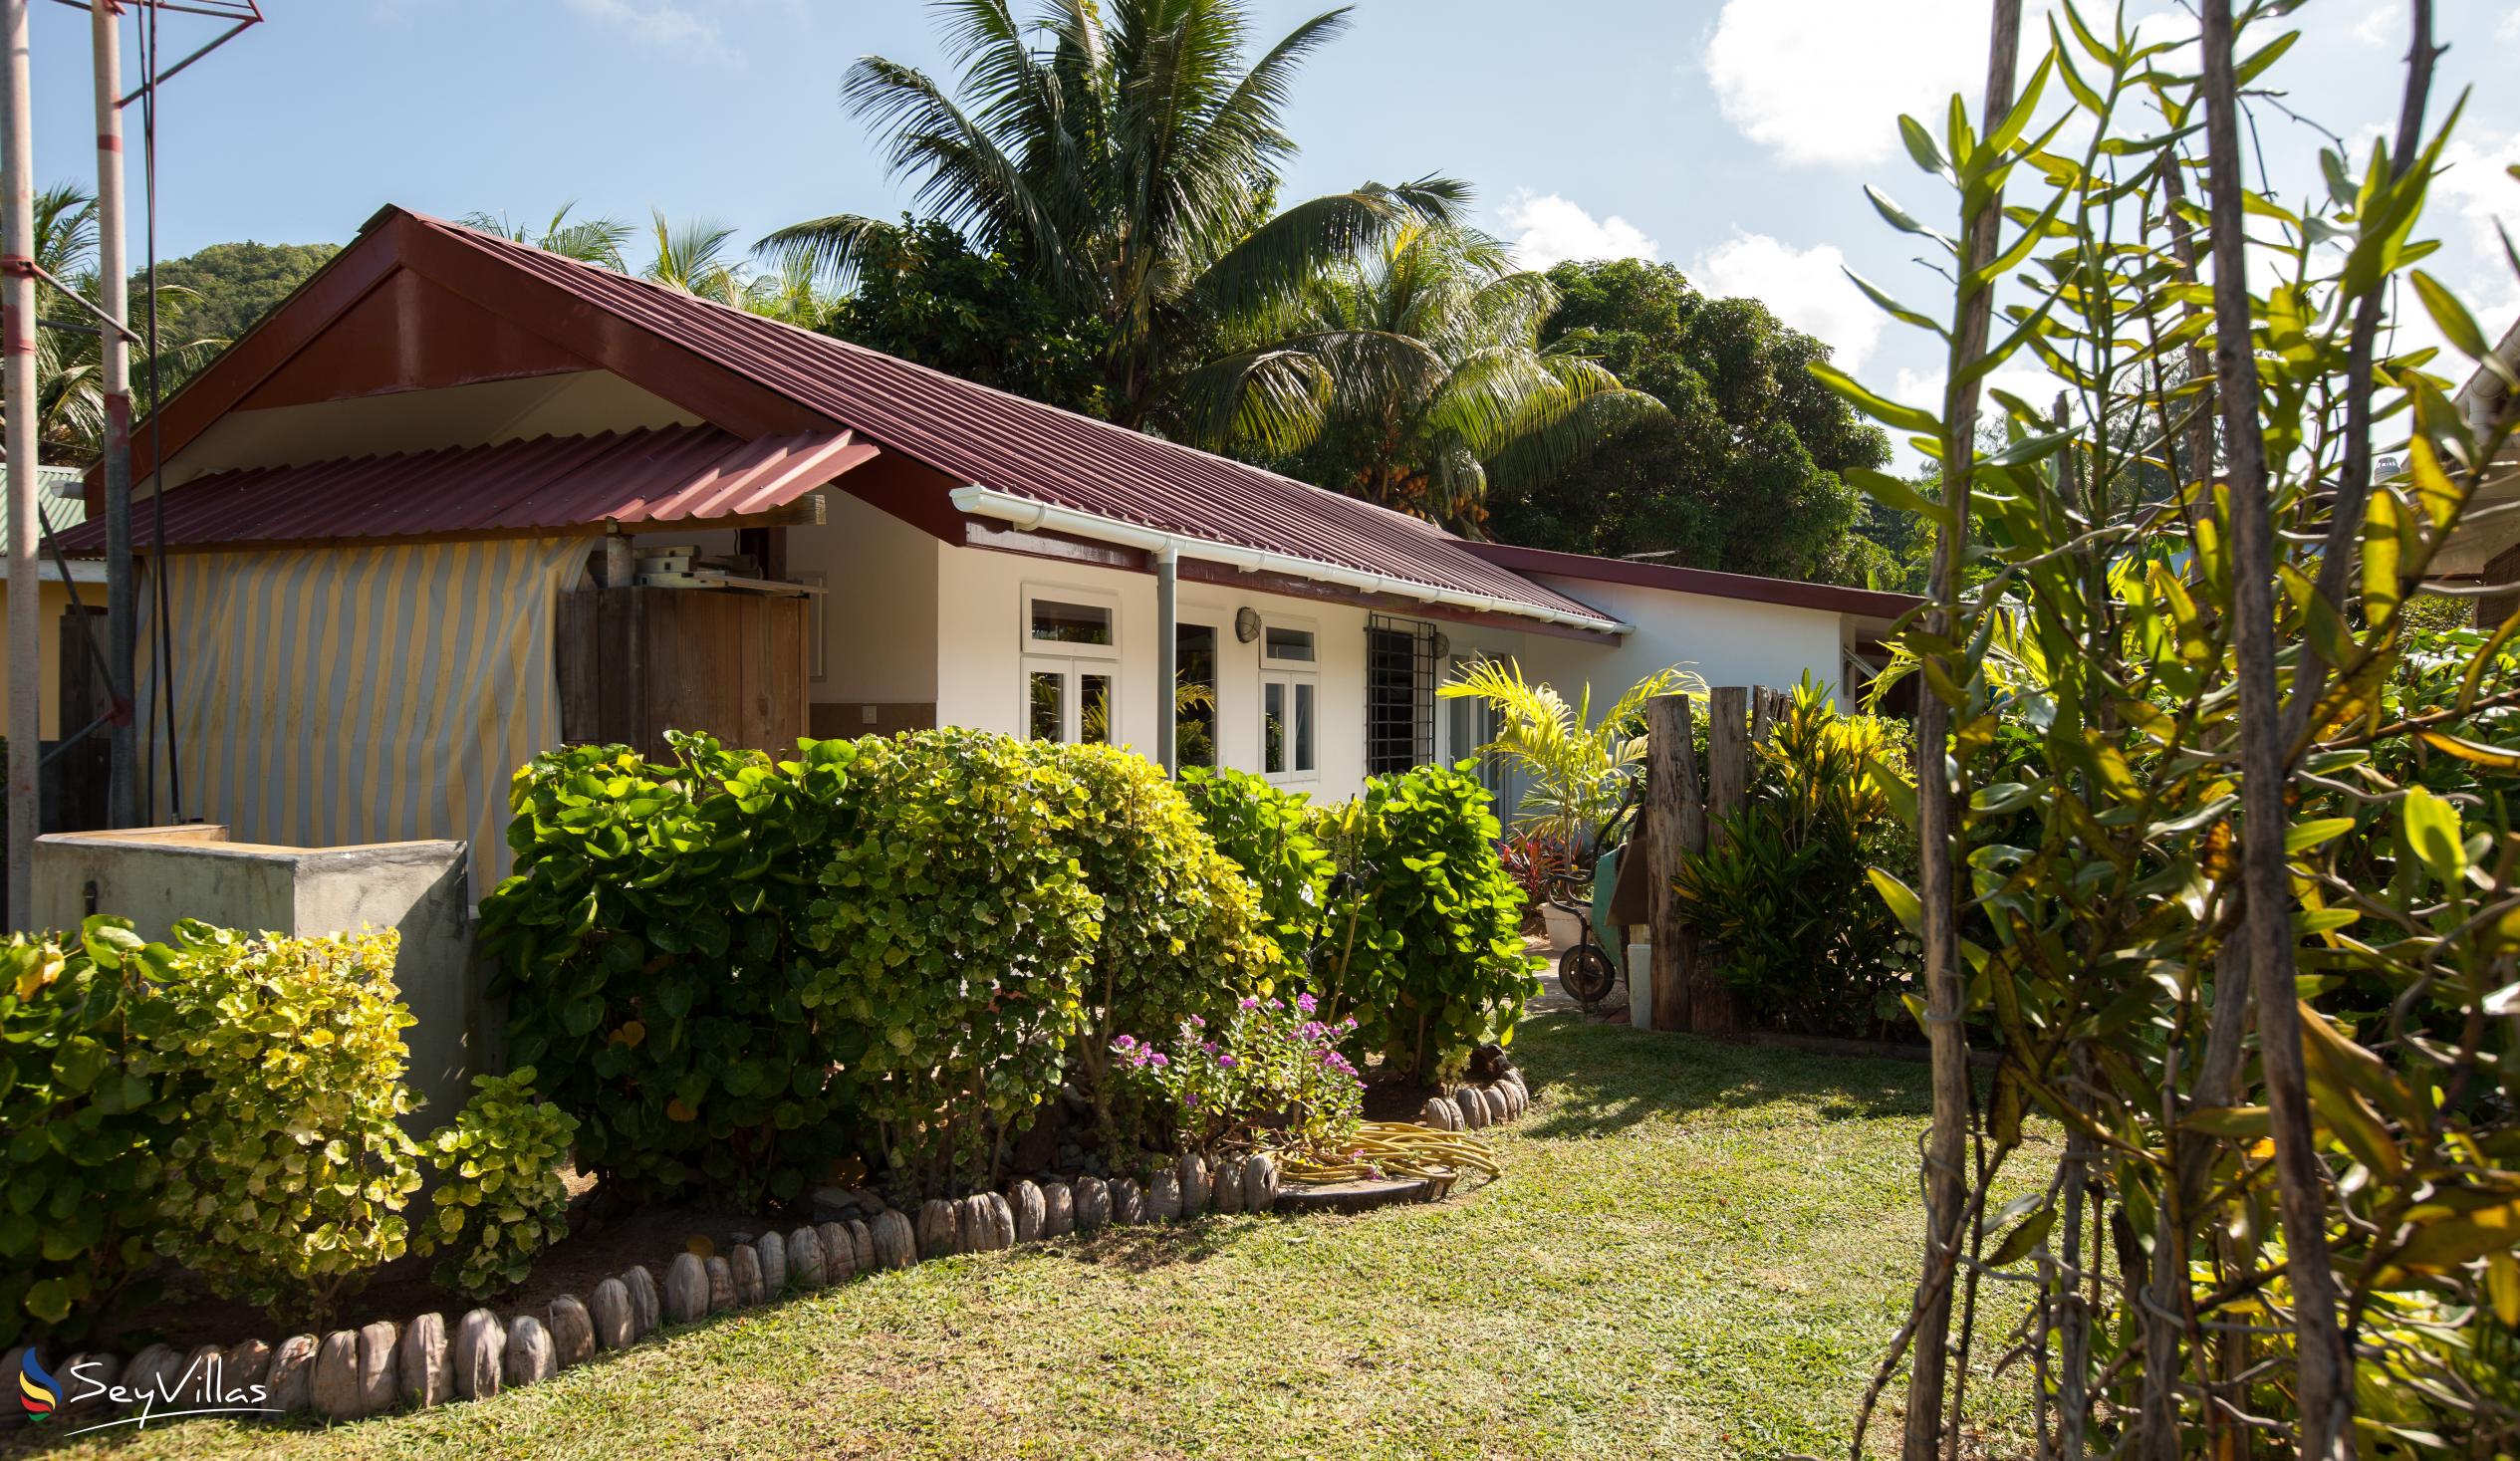 Foto 5: Le Relax St. Joseph Guest House - Aussenbereich - Praslin (Seychellen)